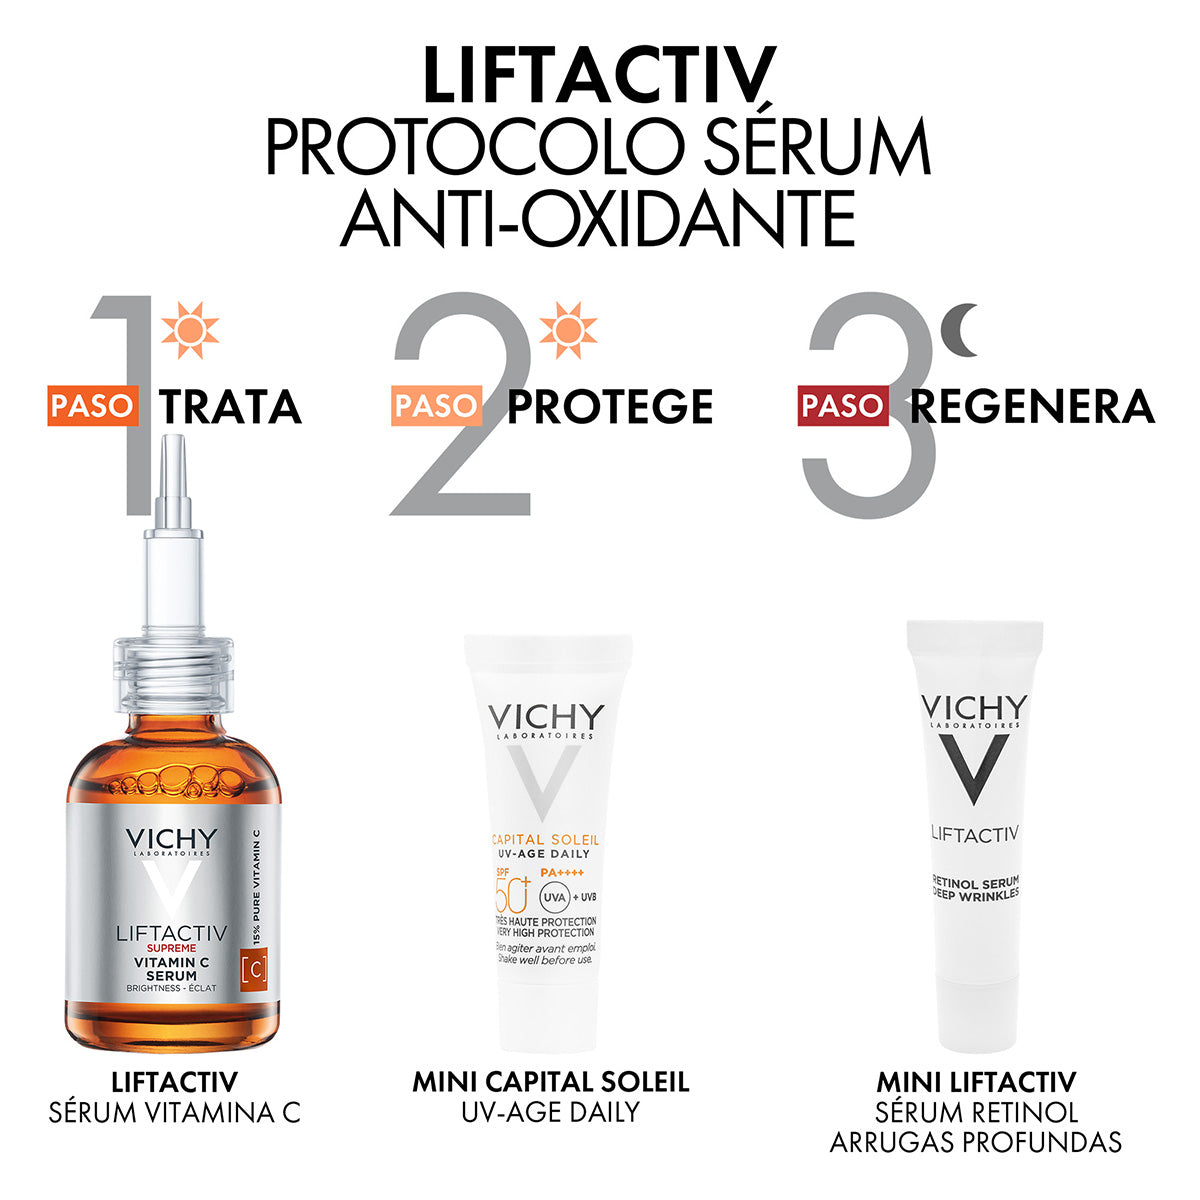 Vichy Kit Liftactiv Supreme Vitamin C, Protocolo anti-oxidante.